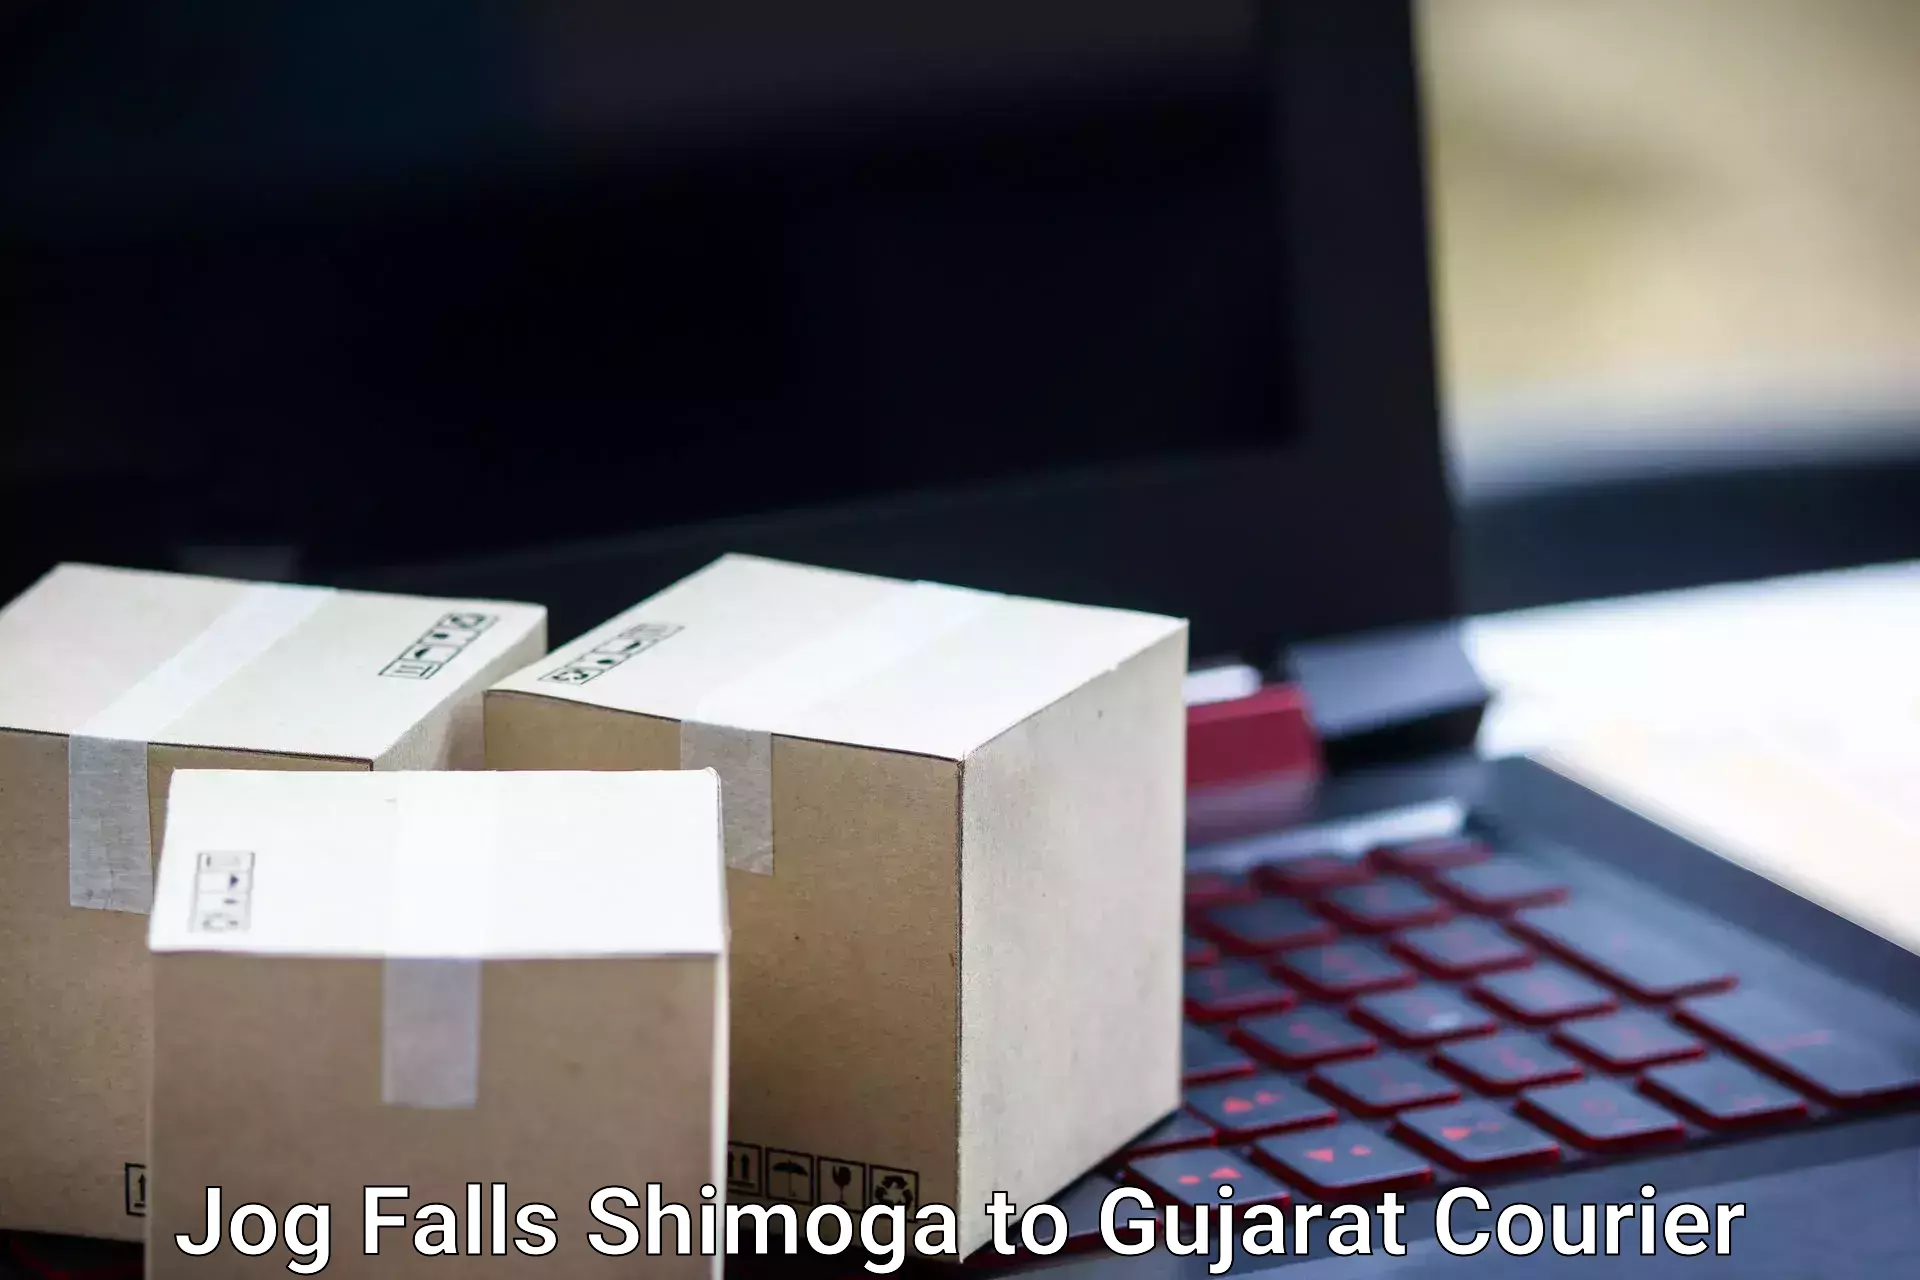 Luggage shipment tracking in Jog Falls Shimoga to Gujarat